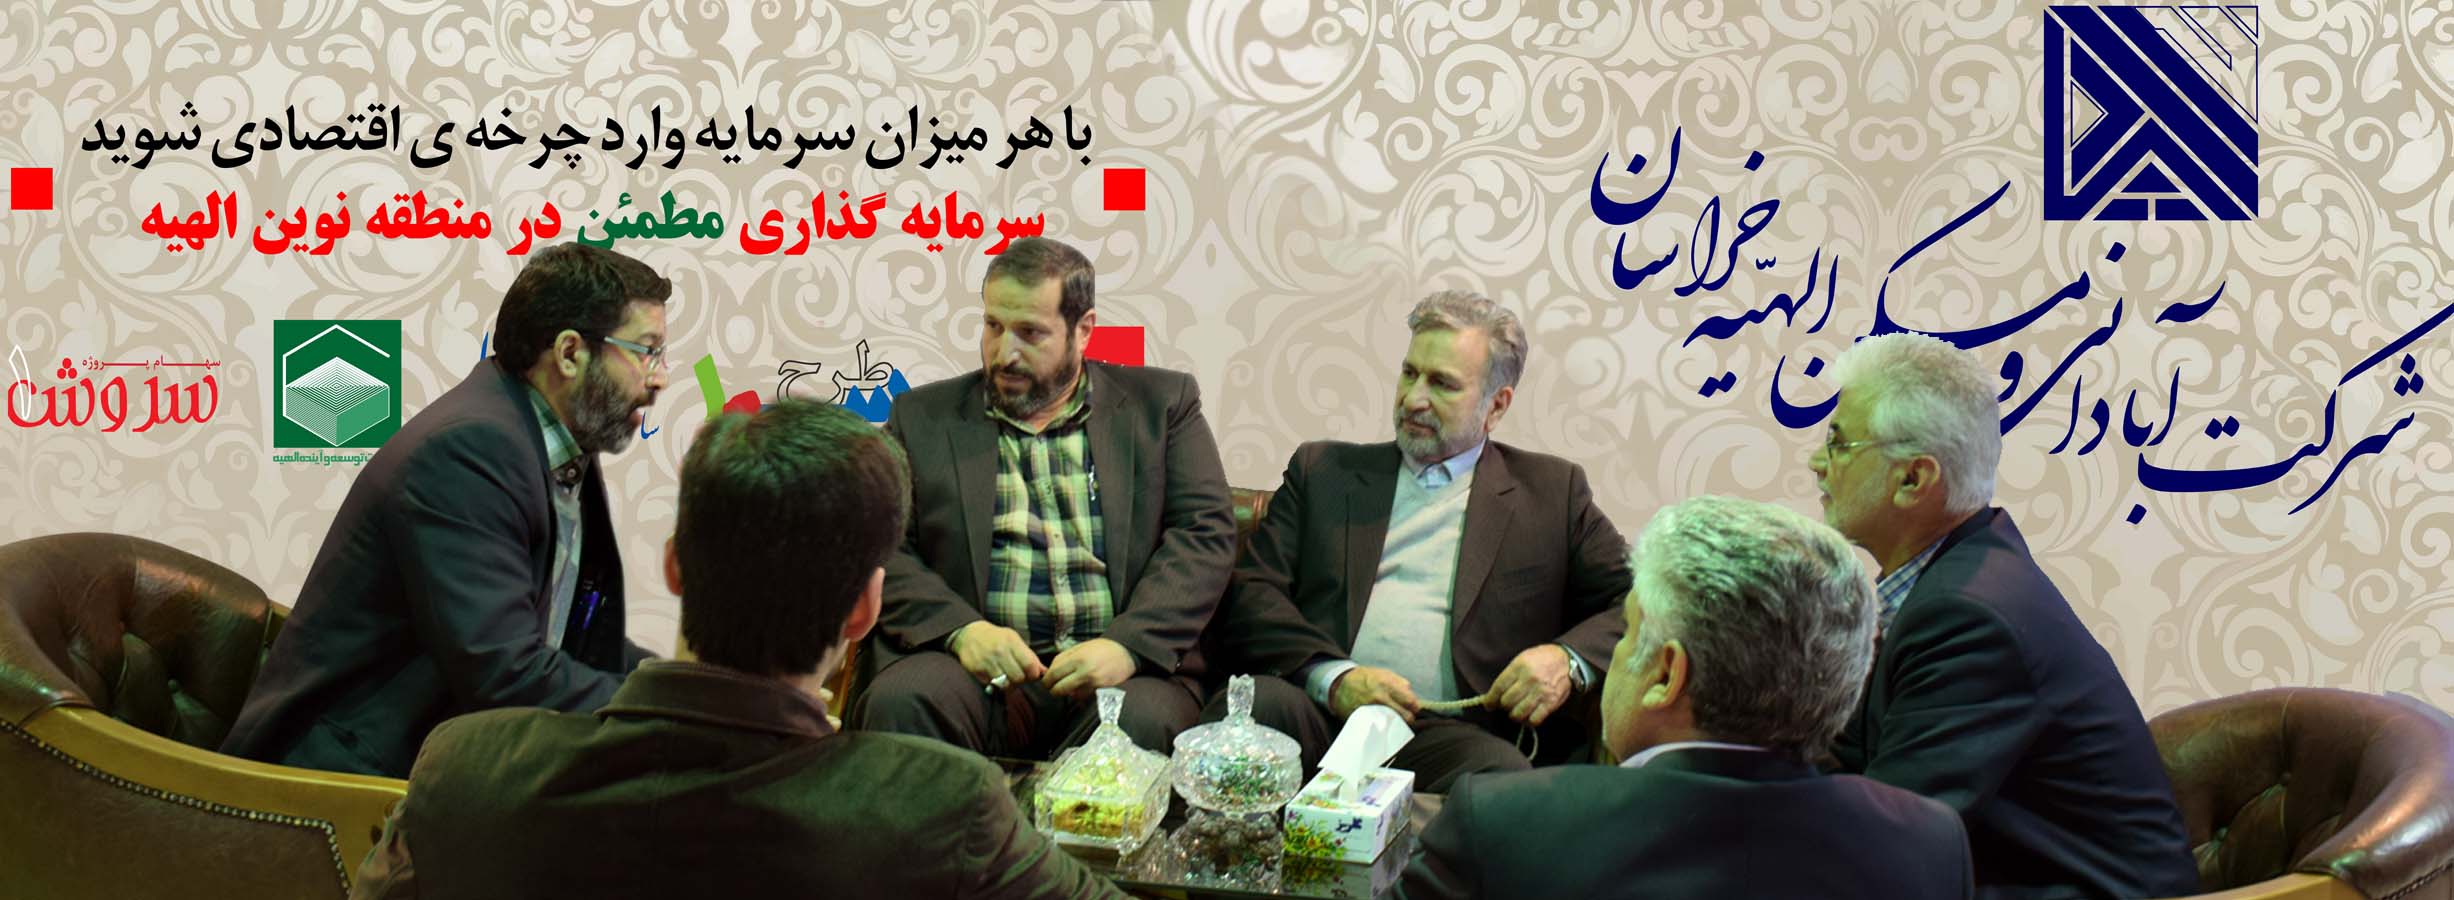 حضور شرکت الهیه در نمایشگاه انبوه سازان مشهد (94/08/27)